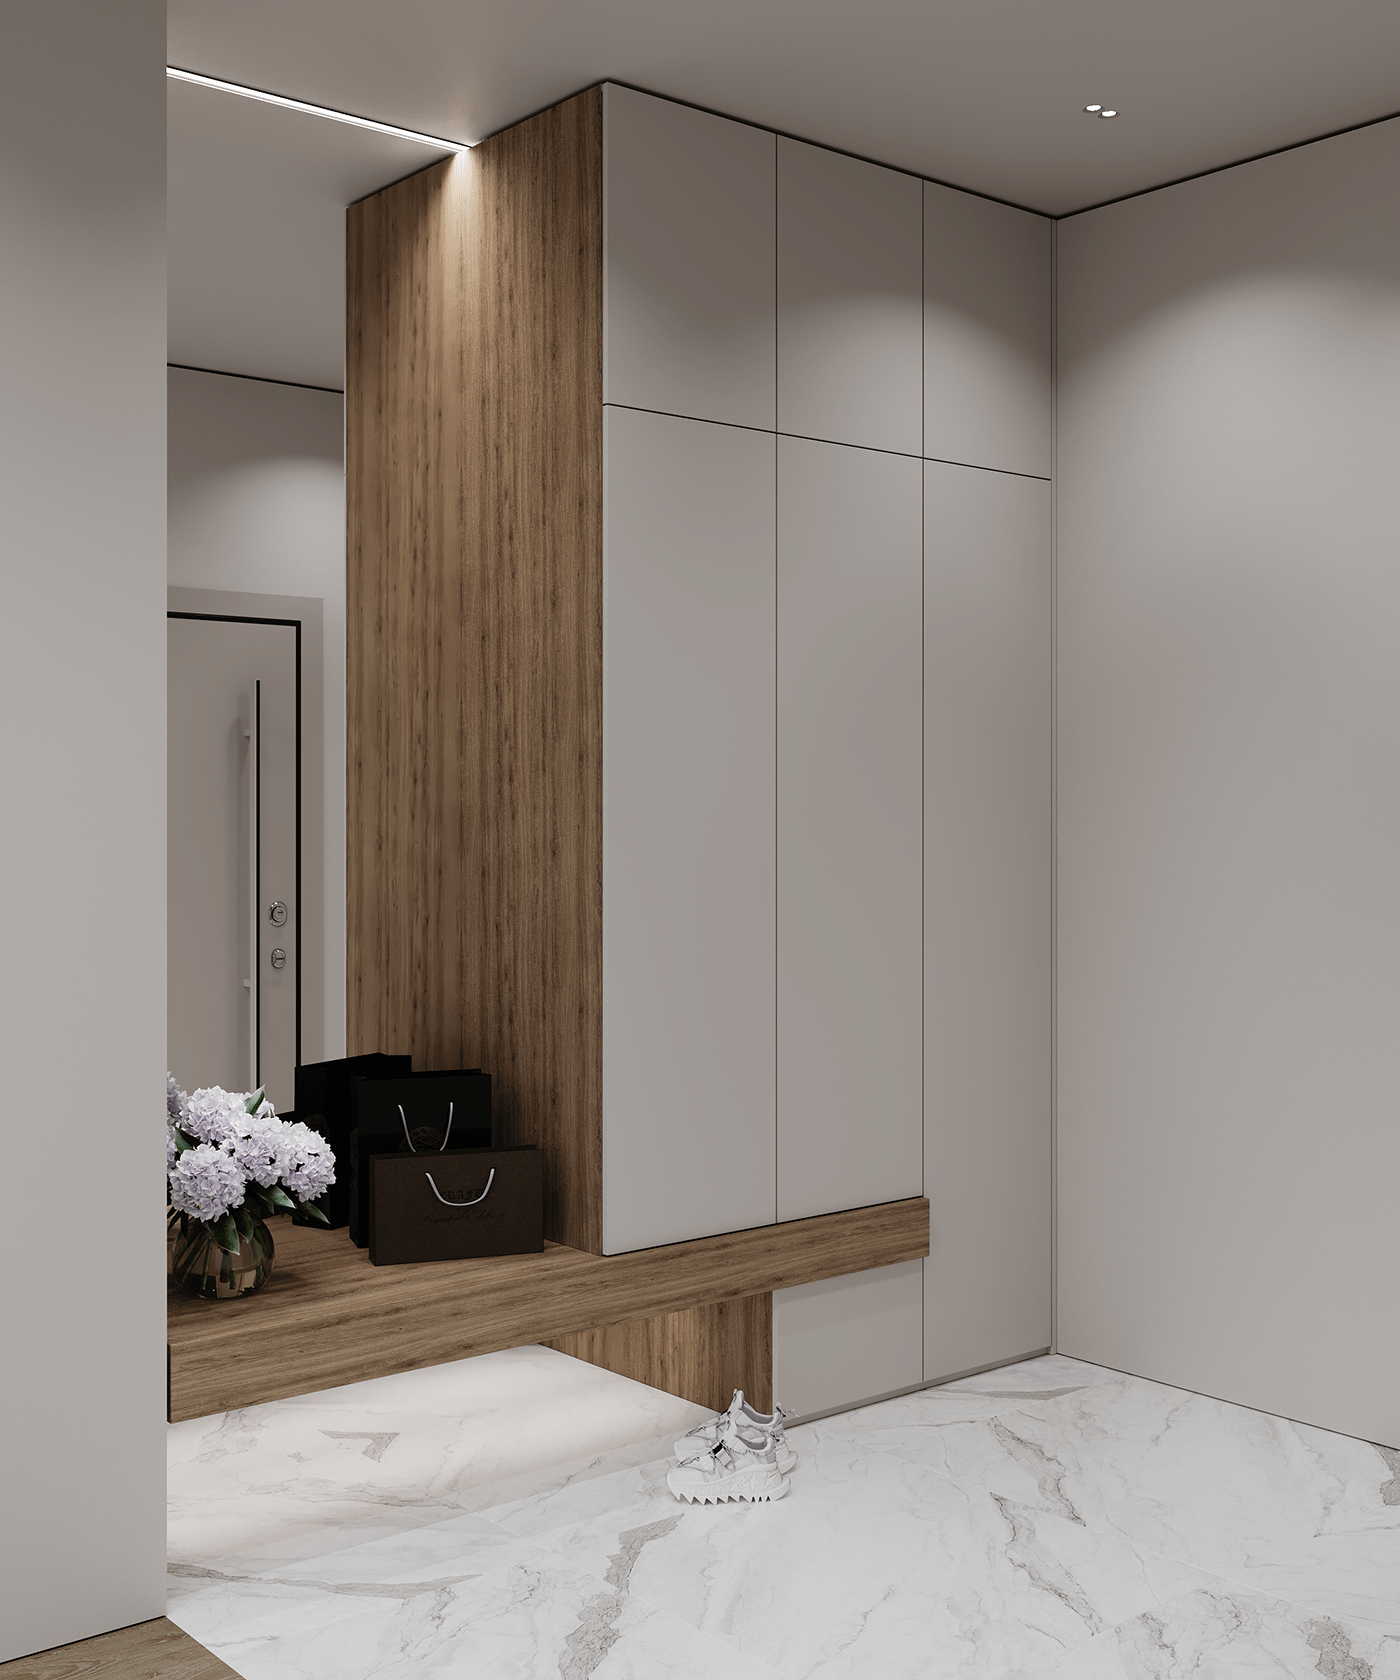 3D 3ds max architecture archviz beige interior corona interior design  kitchen Render visualization